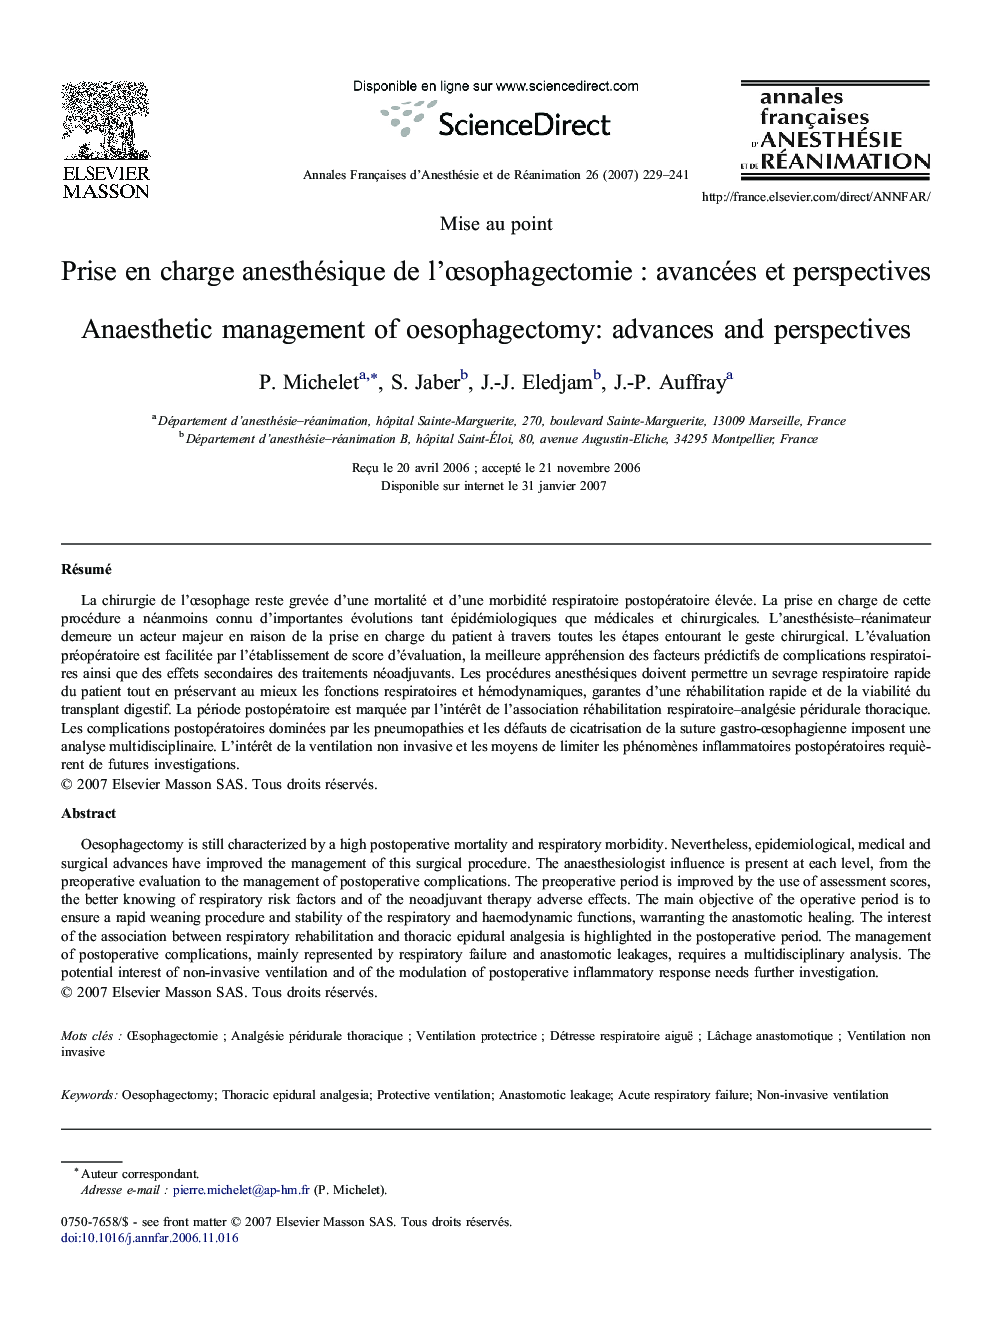 Prise en charge anesthésique de l'œsophagectomie : avancées et perspectives